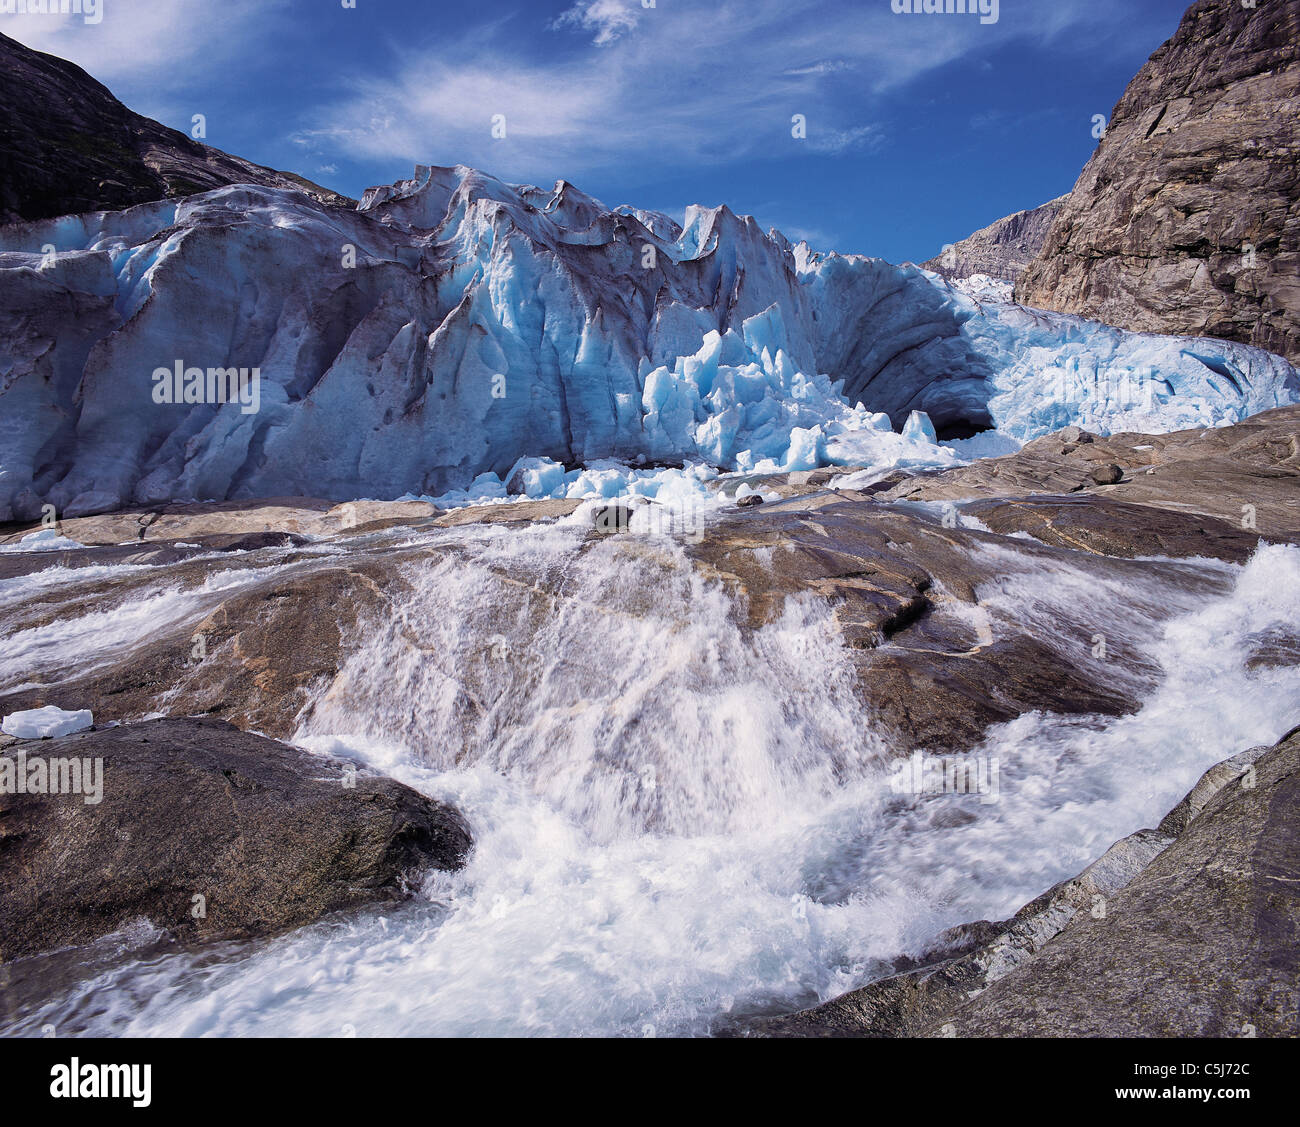 Un flux d'eau de fonte de la délivrance du museau glacier Nigardsbreen, Parc National de Jostedal, Norvège Banque D'Images